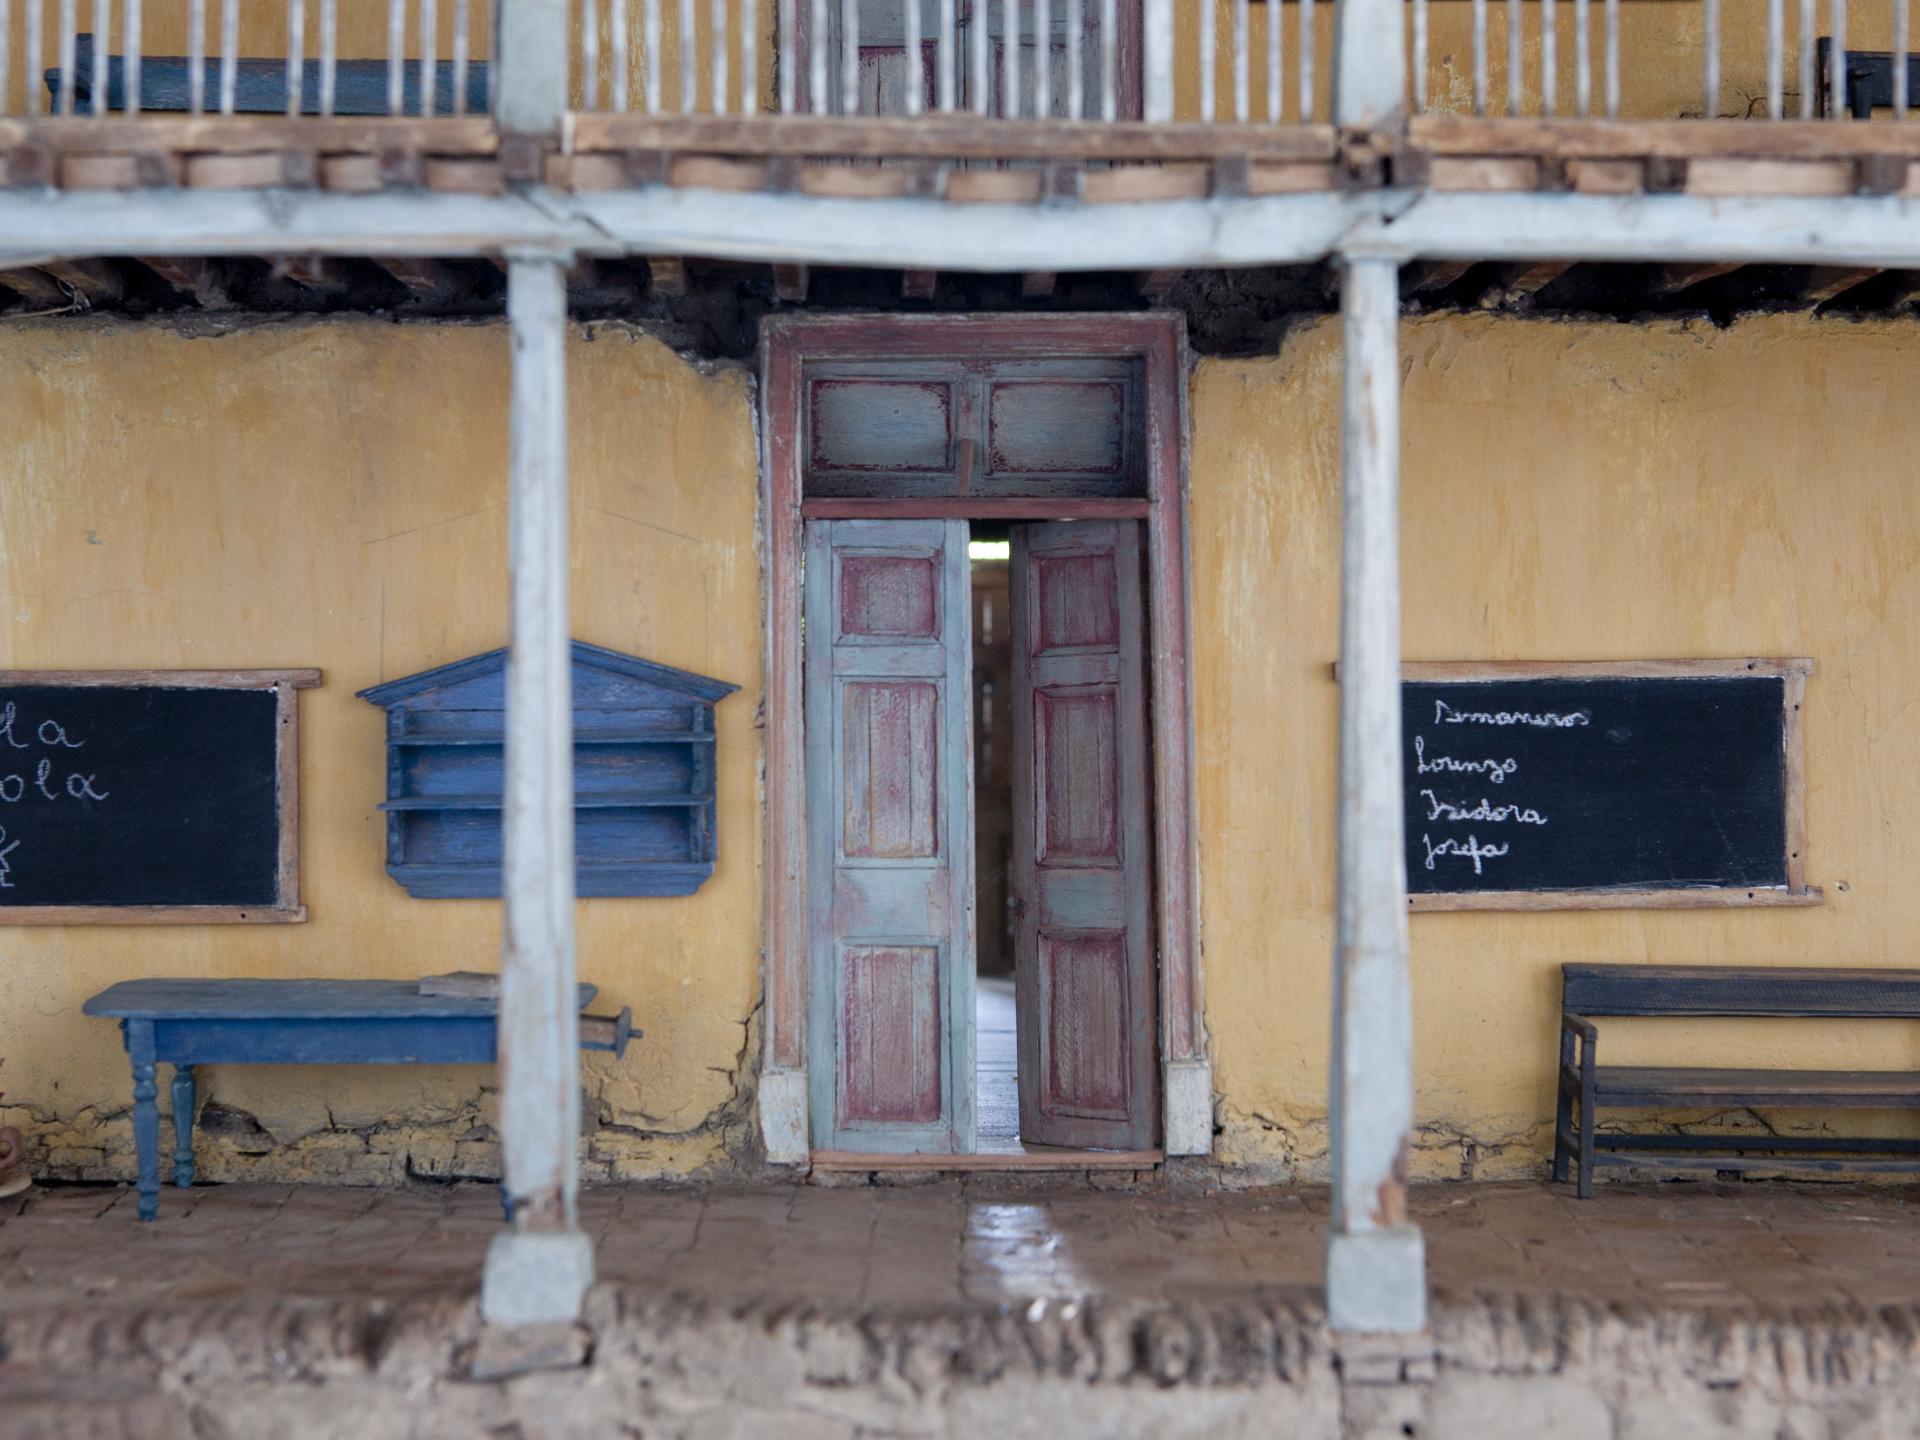 Maqueta de una vivienda tradicional. Se muestra una entrada de un inmueble de dos niveles, se identifica una fachada continua en tono beage, en el lugar hay una puerta, dos pizarras de tiza, una mesa azul y una banca de madera. 